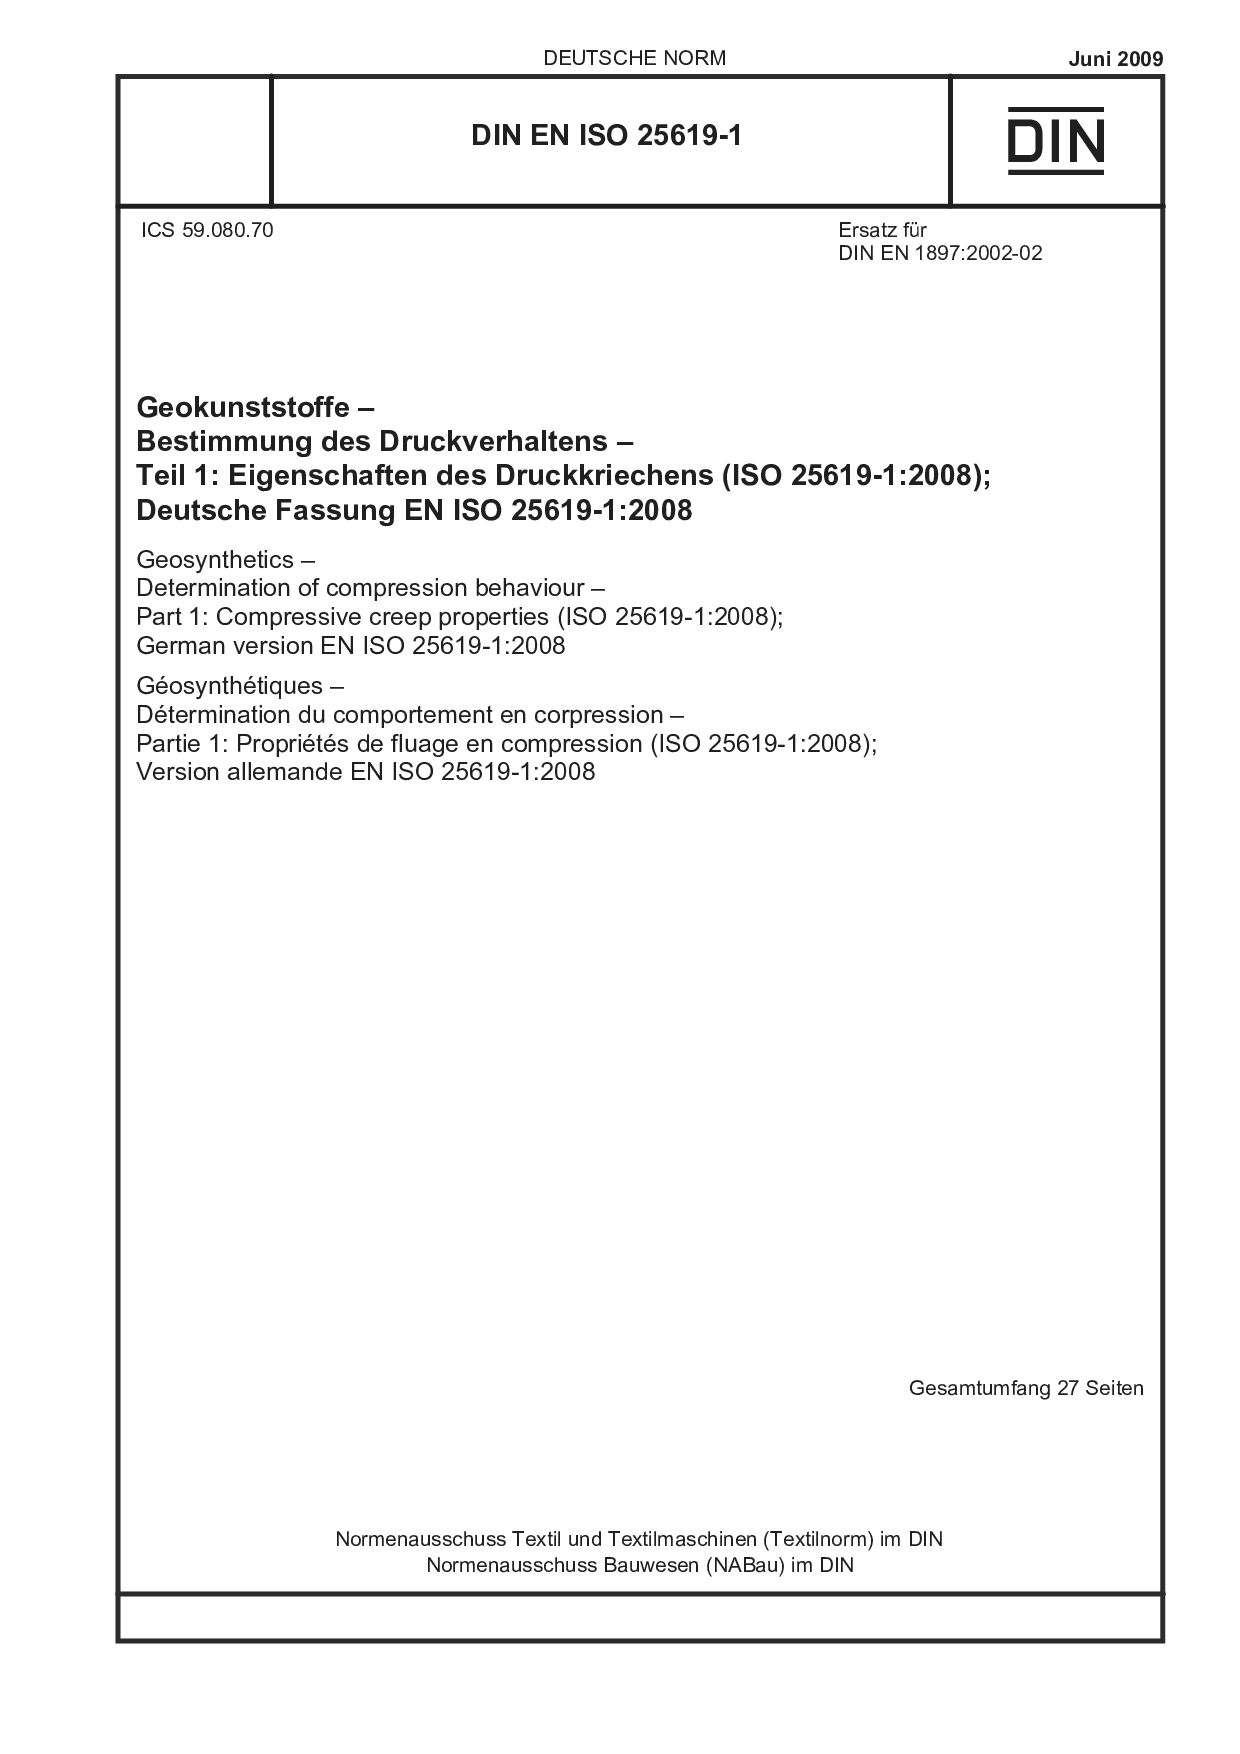 DIN EN ISO 25619-1:2009